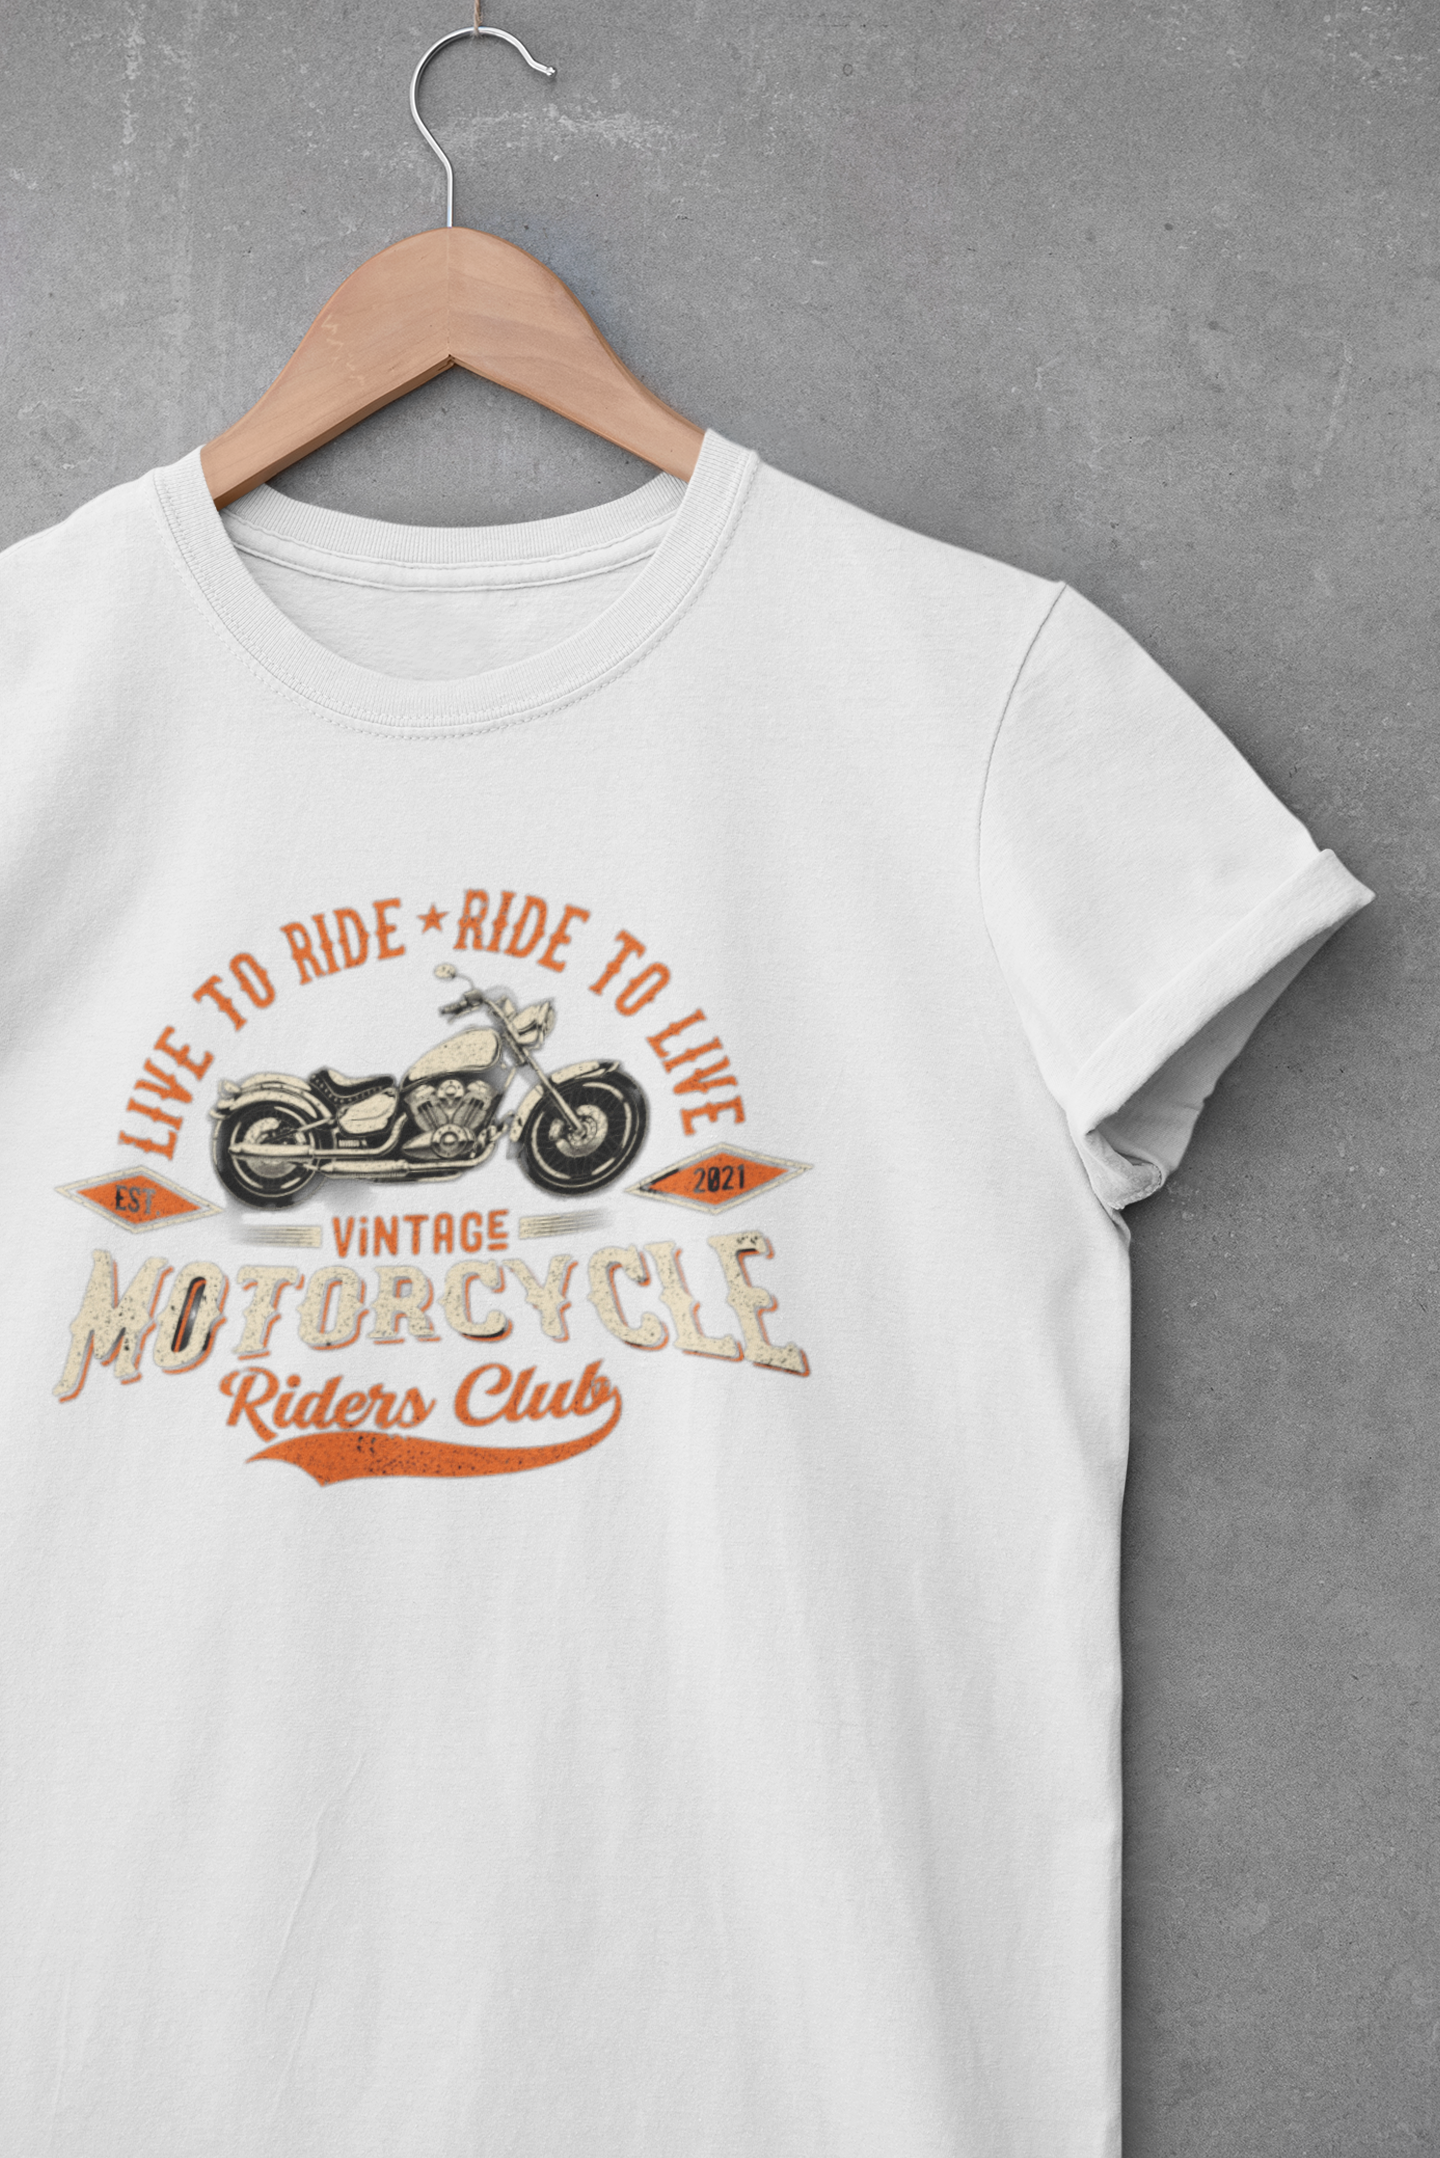 Vintage Motorcycles Riders Club - Tee